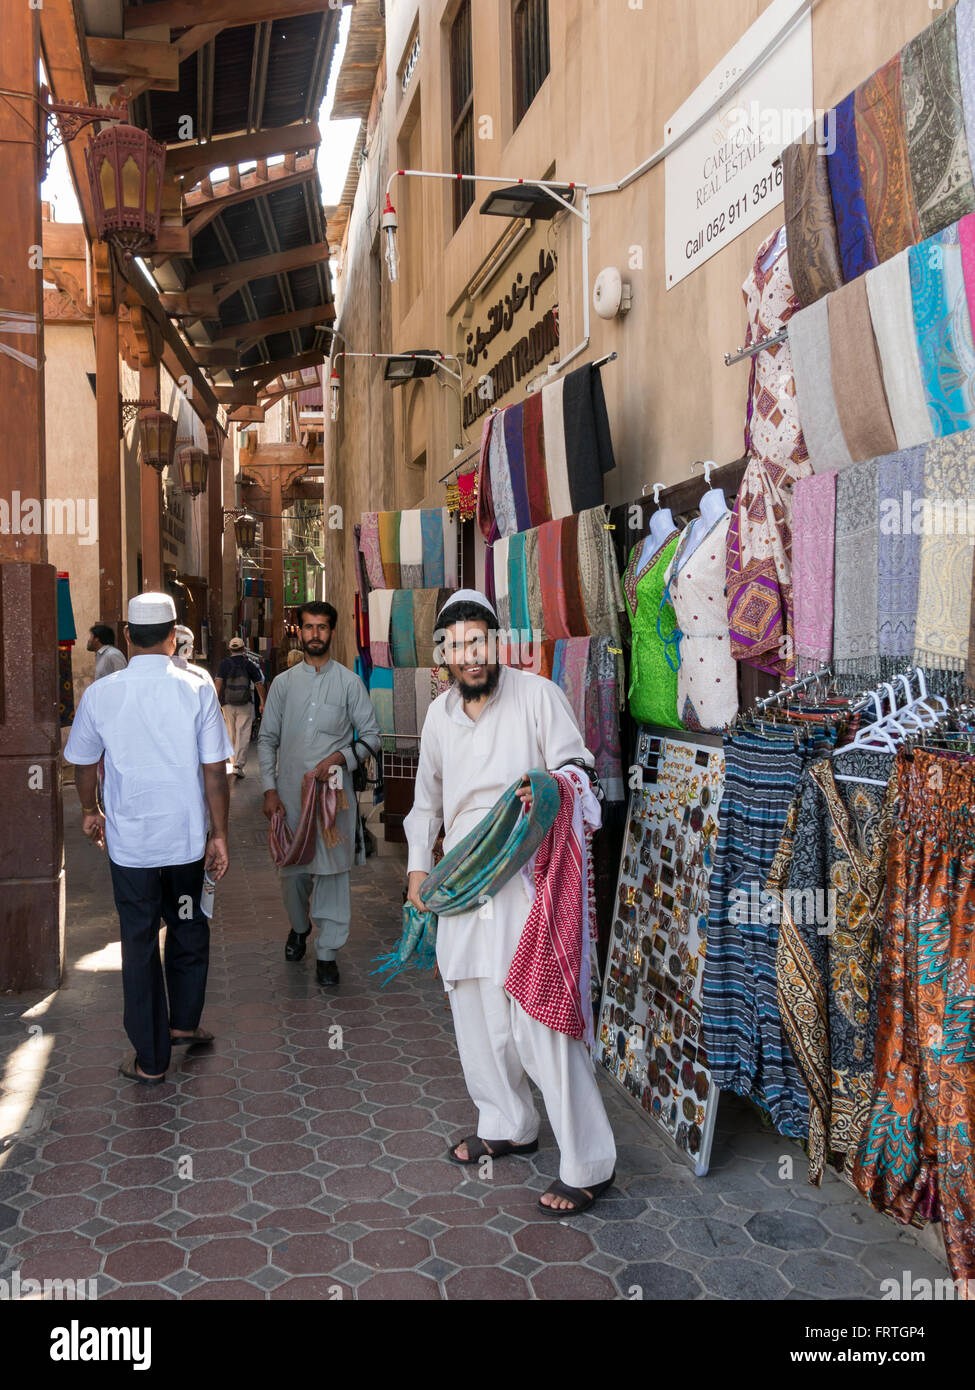 Les vendeurs de magasin dans l'ancien souk aux textiles couverts Bur Dubai dans le vieux centre-ville de Dubaï, aux Émirats Arabes Unis Banque D'Images